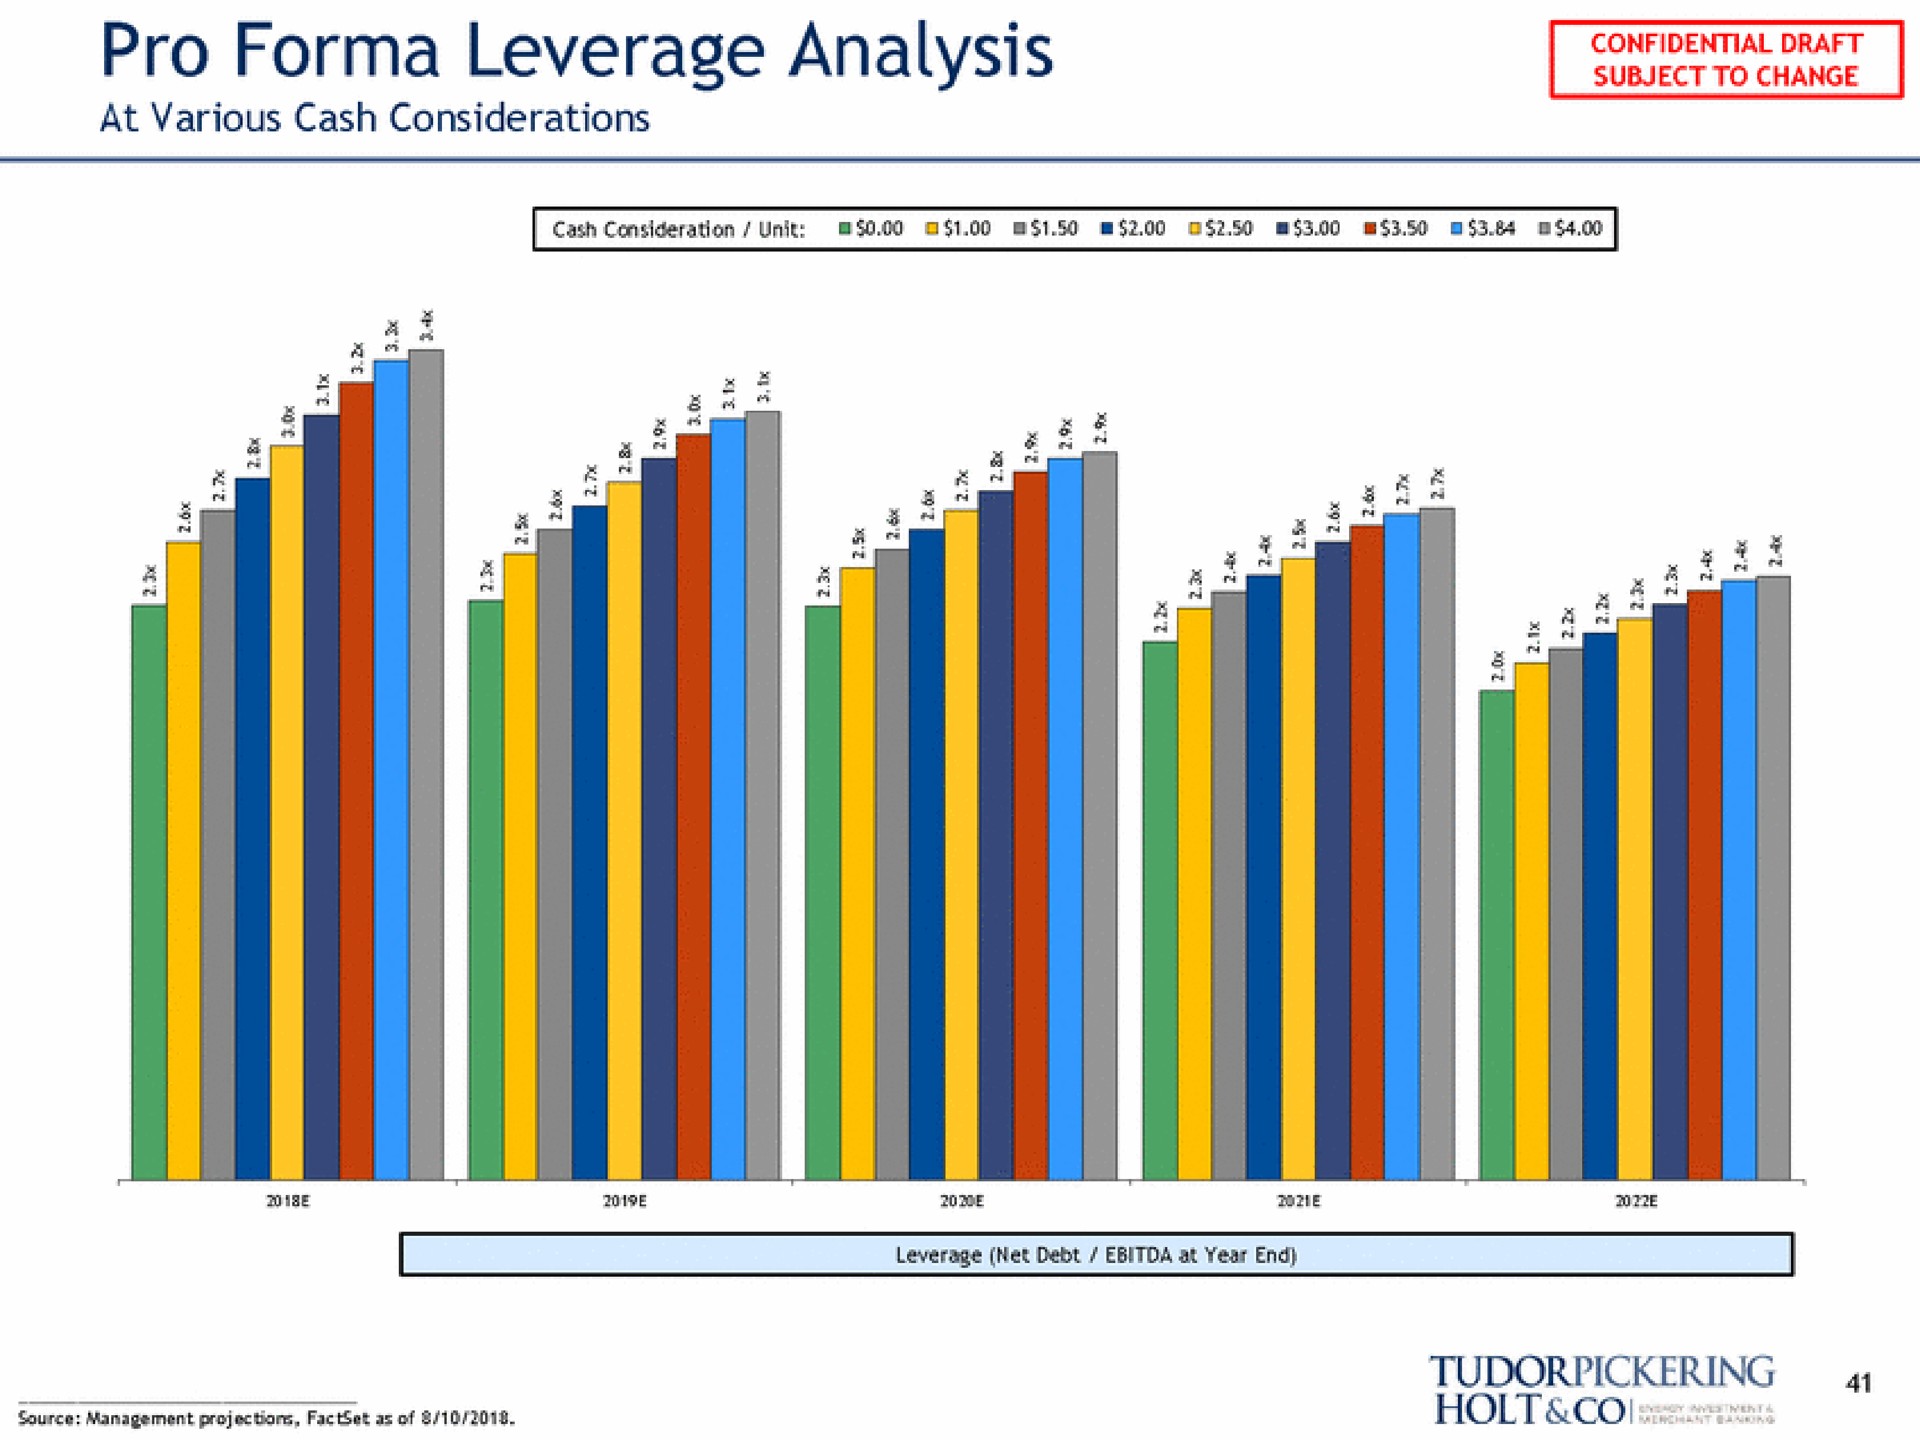 pro leverage analysis | Tudor, Pickering, Holt & Co